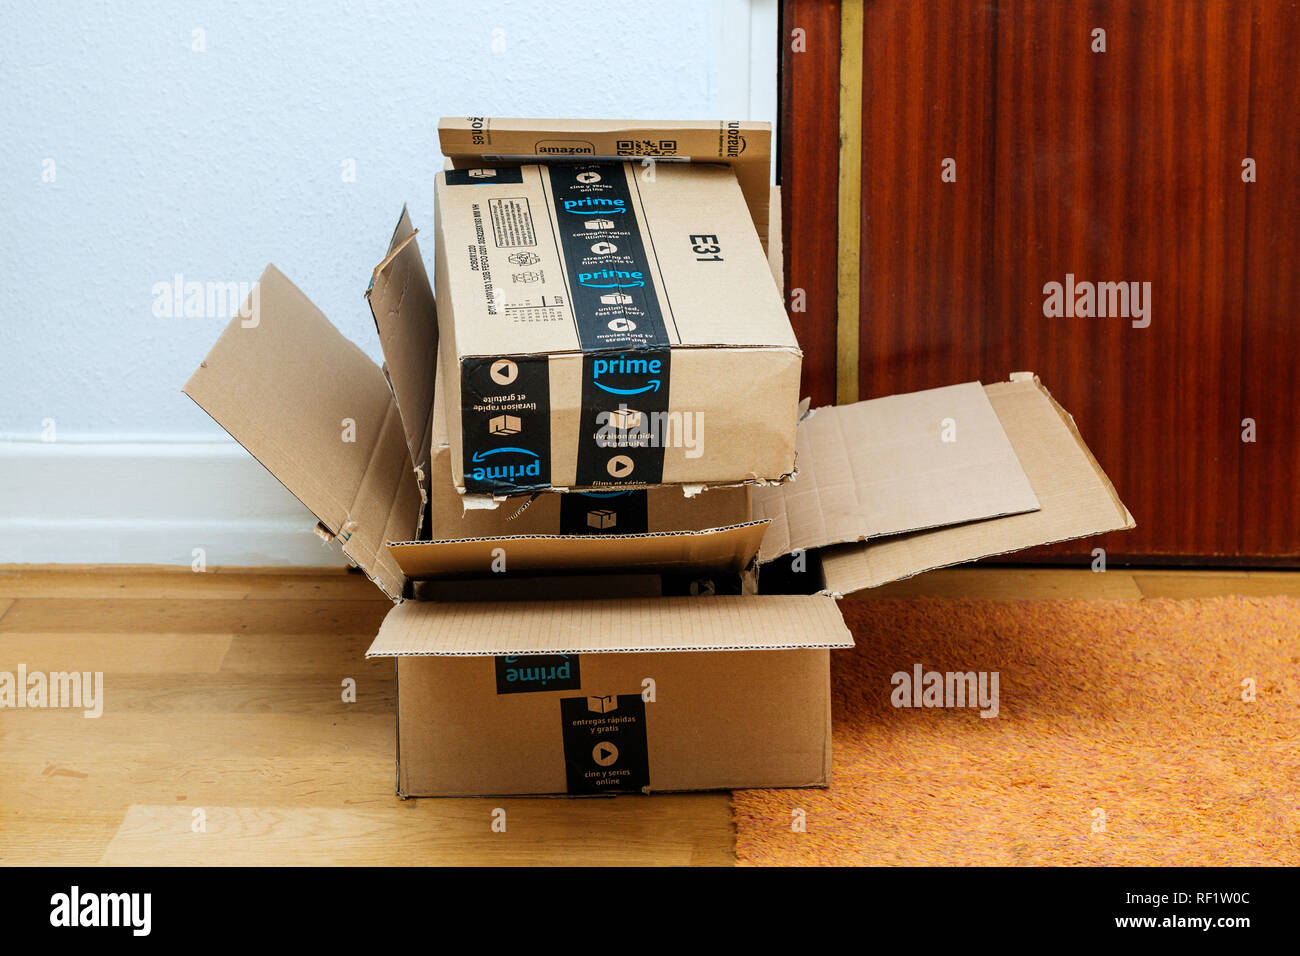 PARIS, Frankreich - Jan 13, 2018: Stapel von Amazon Prime Pakete zu einem  Haus Tür geliefert - recycling Karton Papier boxen Abfälle Stockfotografie  - Alamy